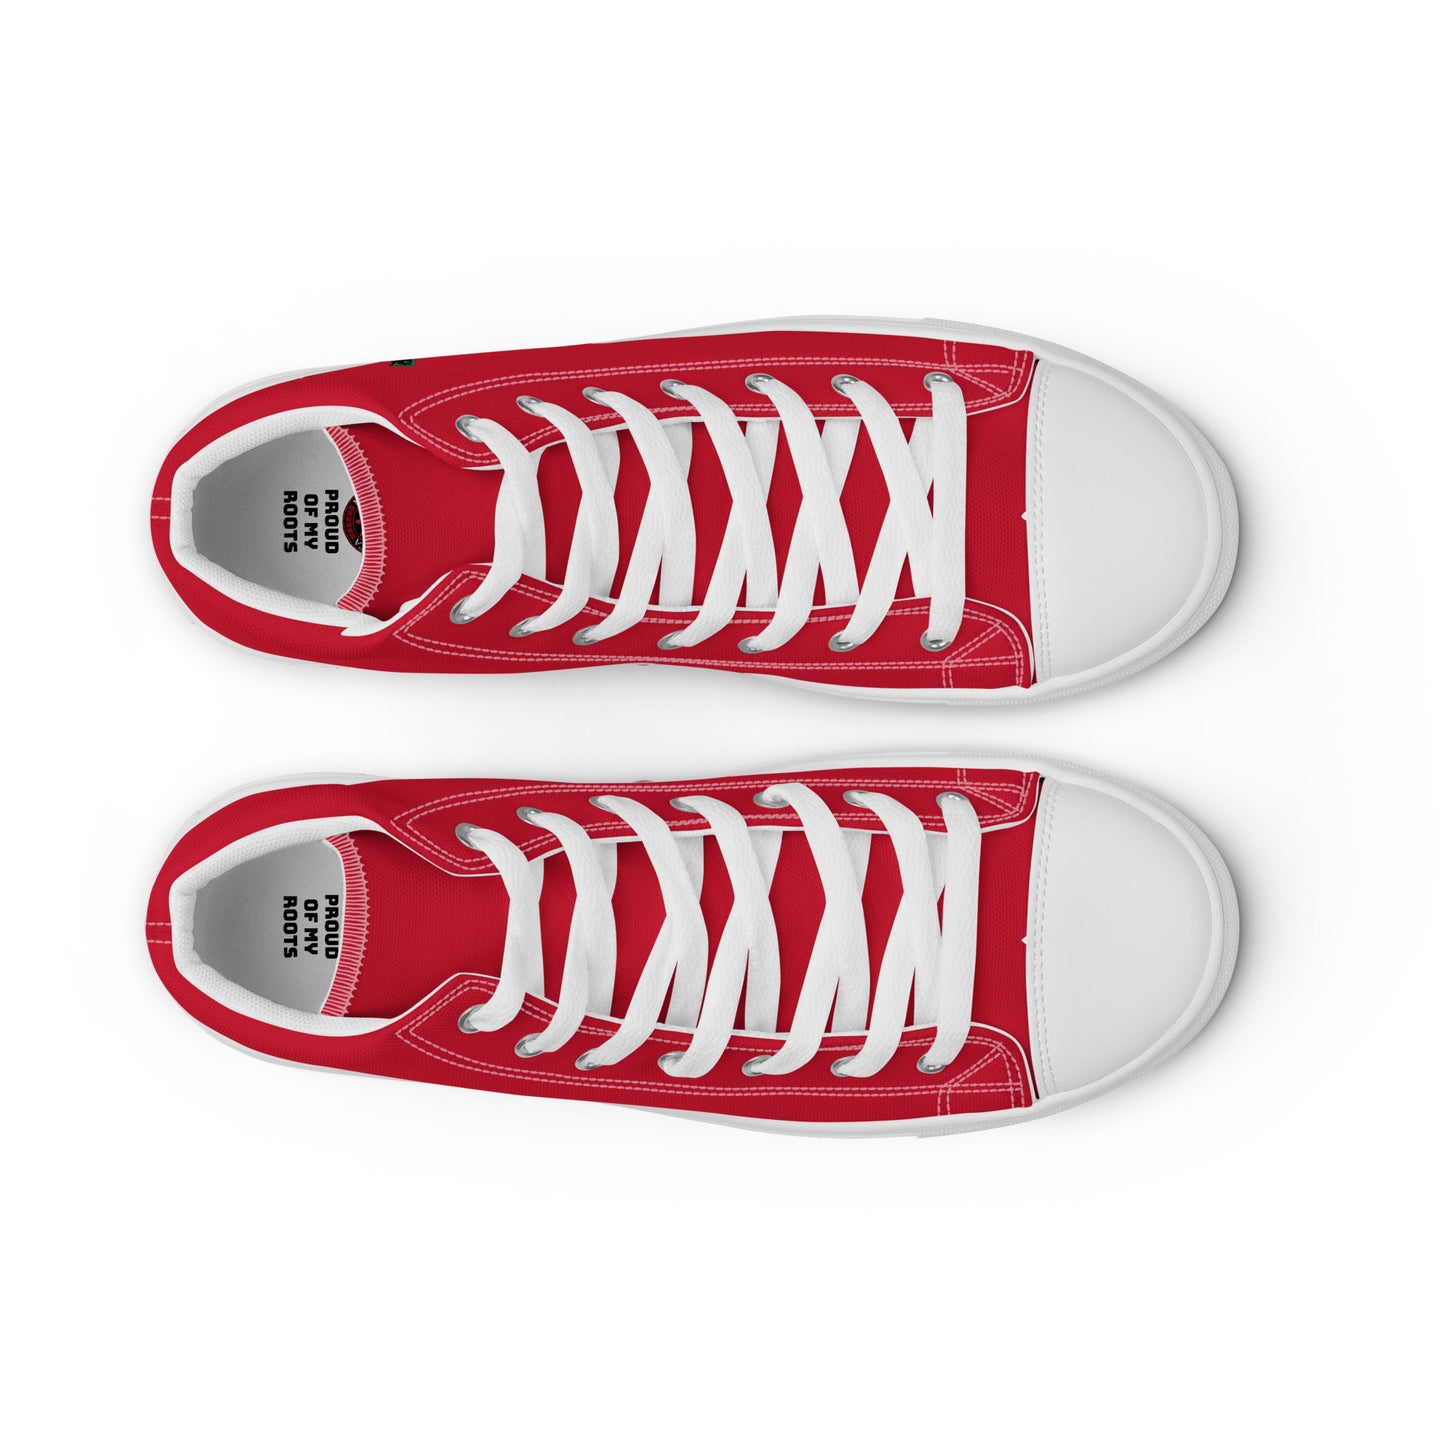 Cuba - Women - Red - High top shoes